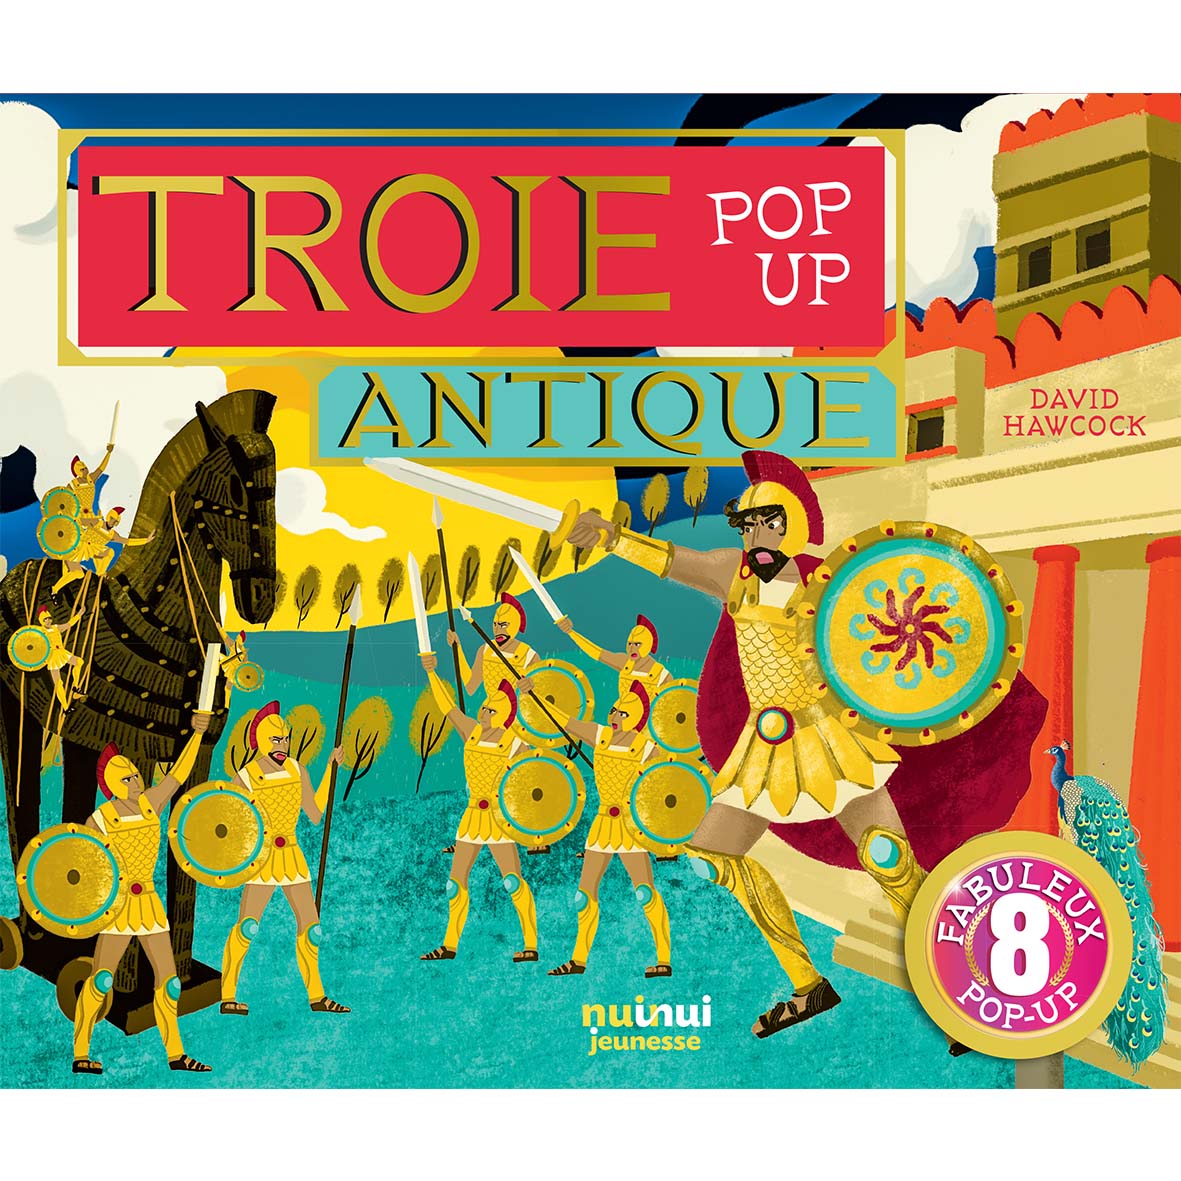 Pop-up historique - Troie antique